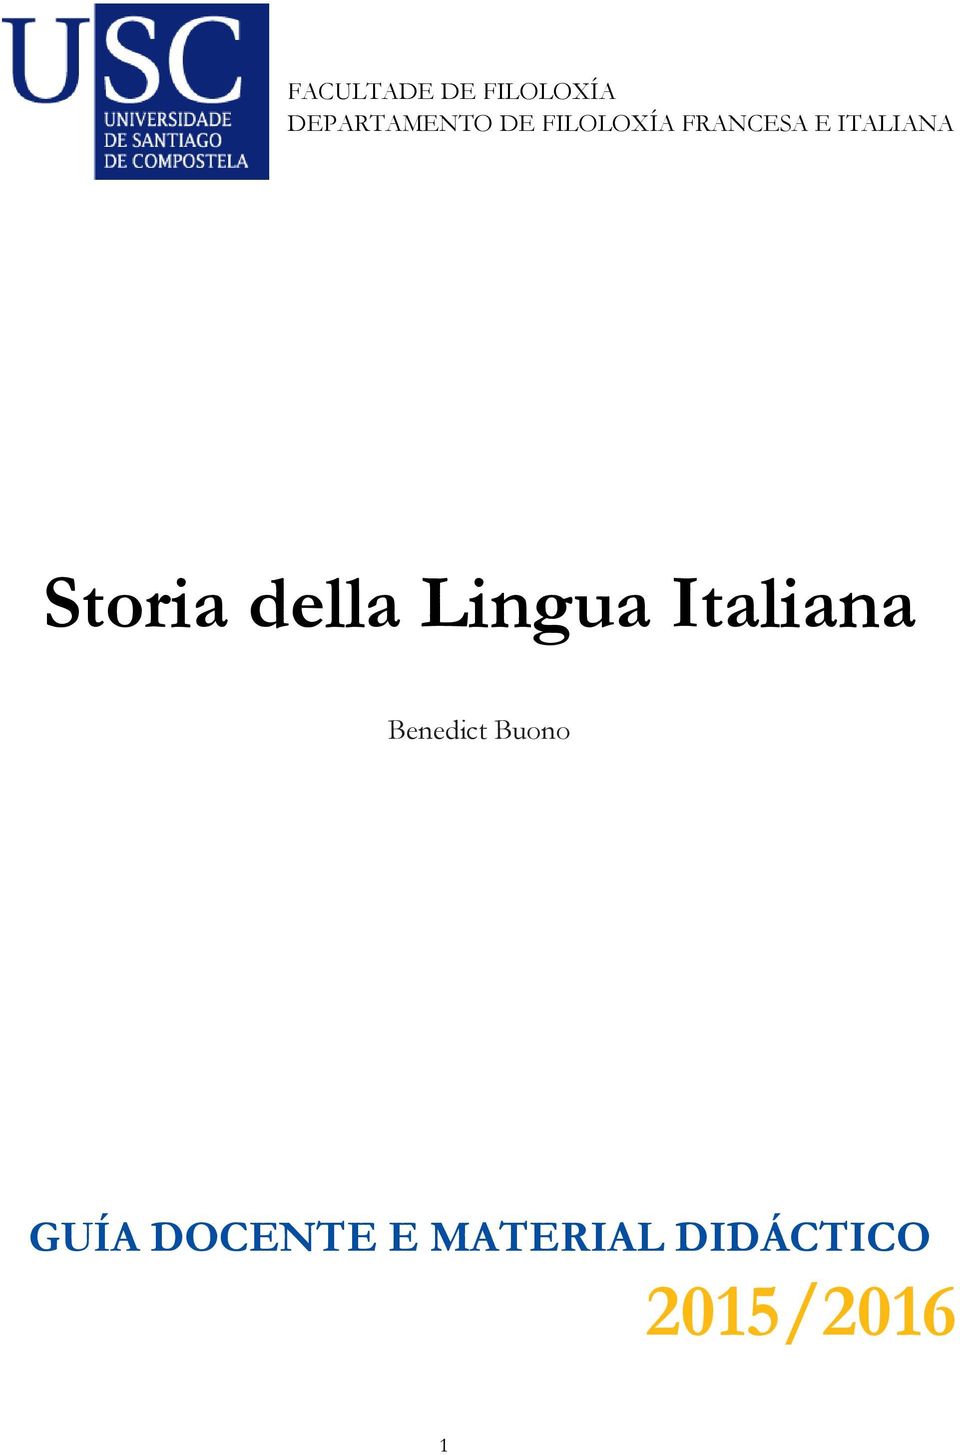 della Lingua Italiana Benedict Buono